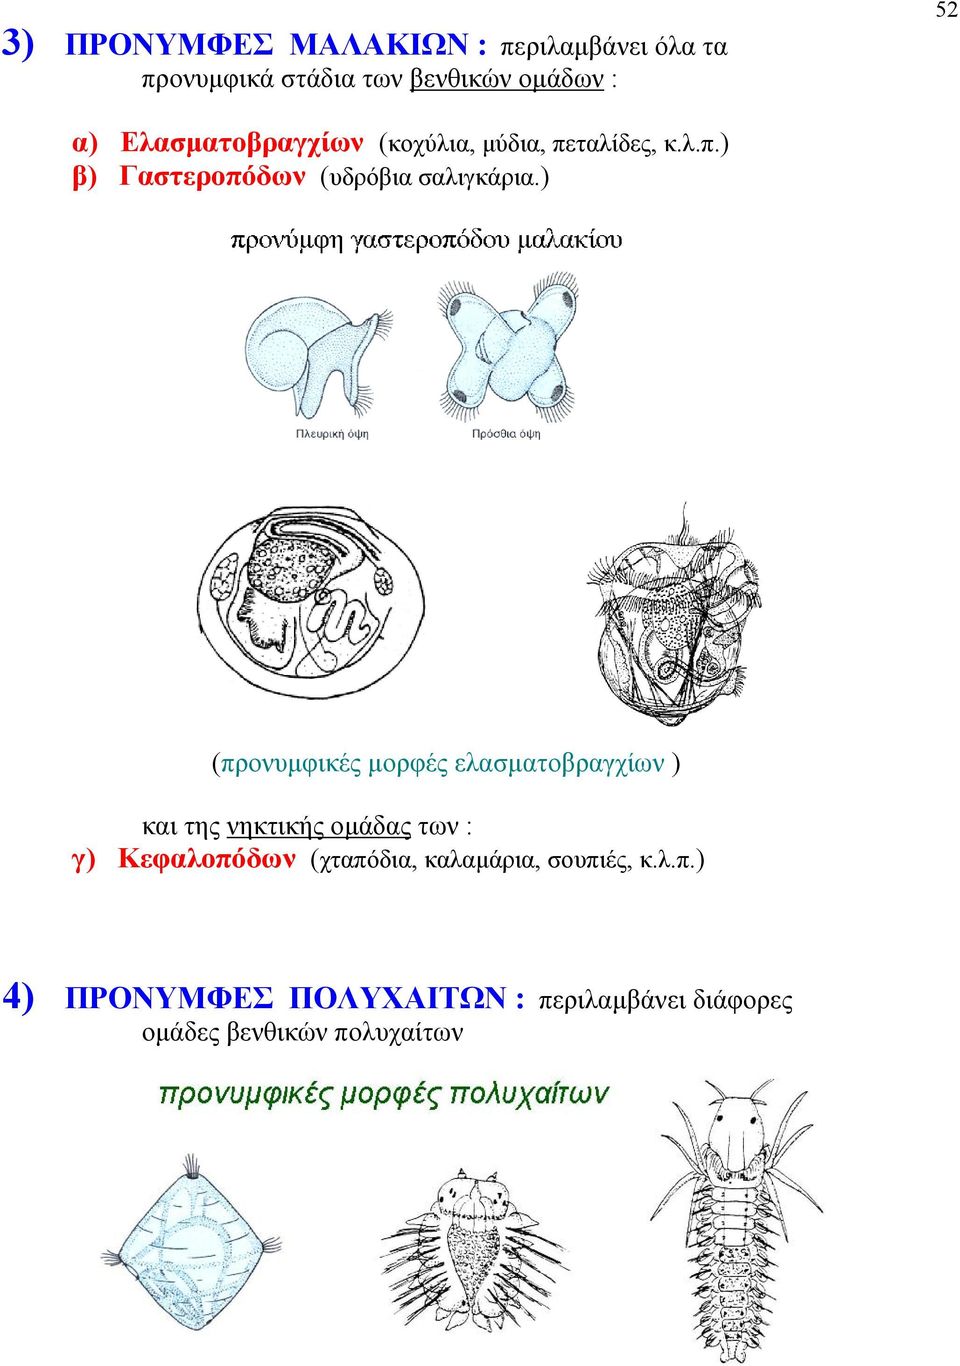 ) (προνυμφικές μορφές ελασματοβραγχίων ) και της νηκτικής ομάδας των : γ) Κεφαλοπόδων